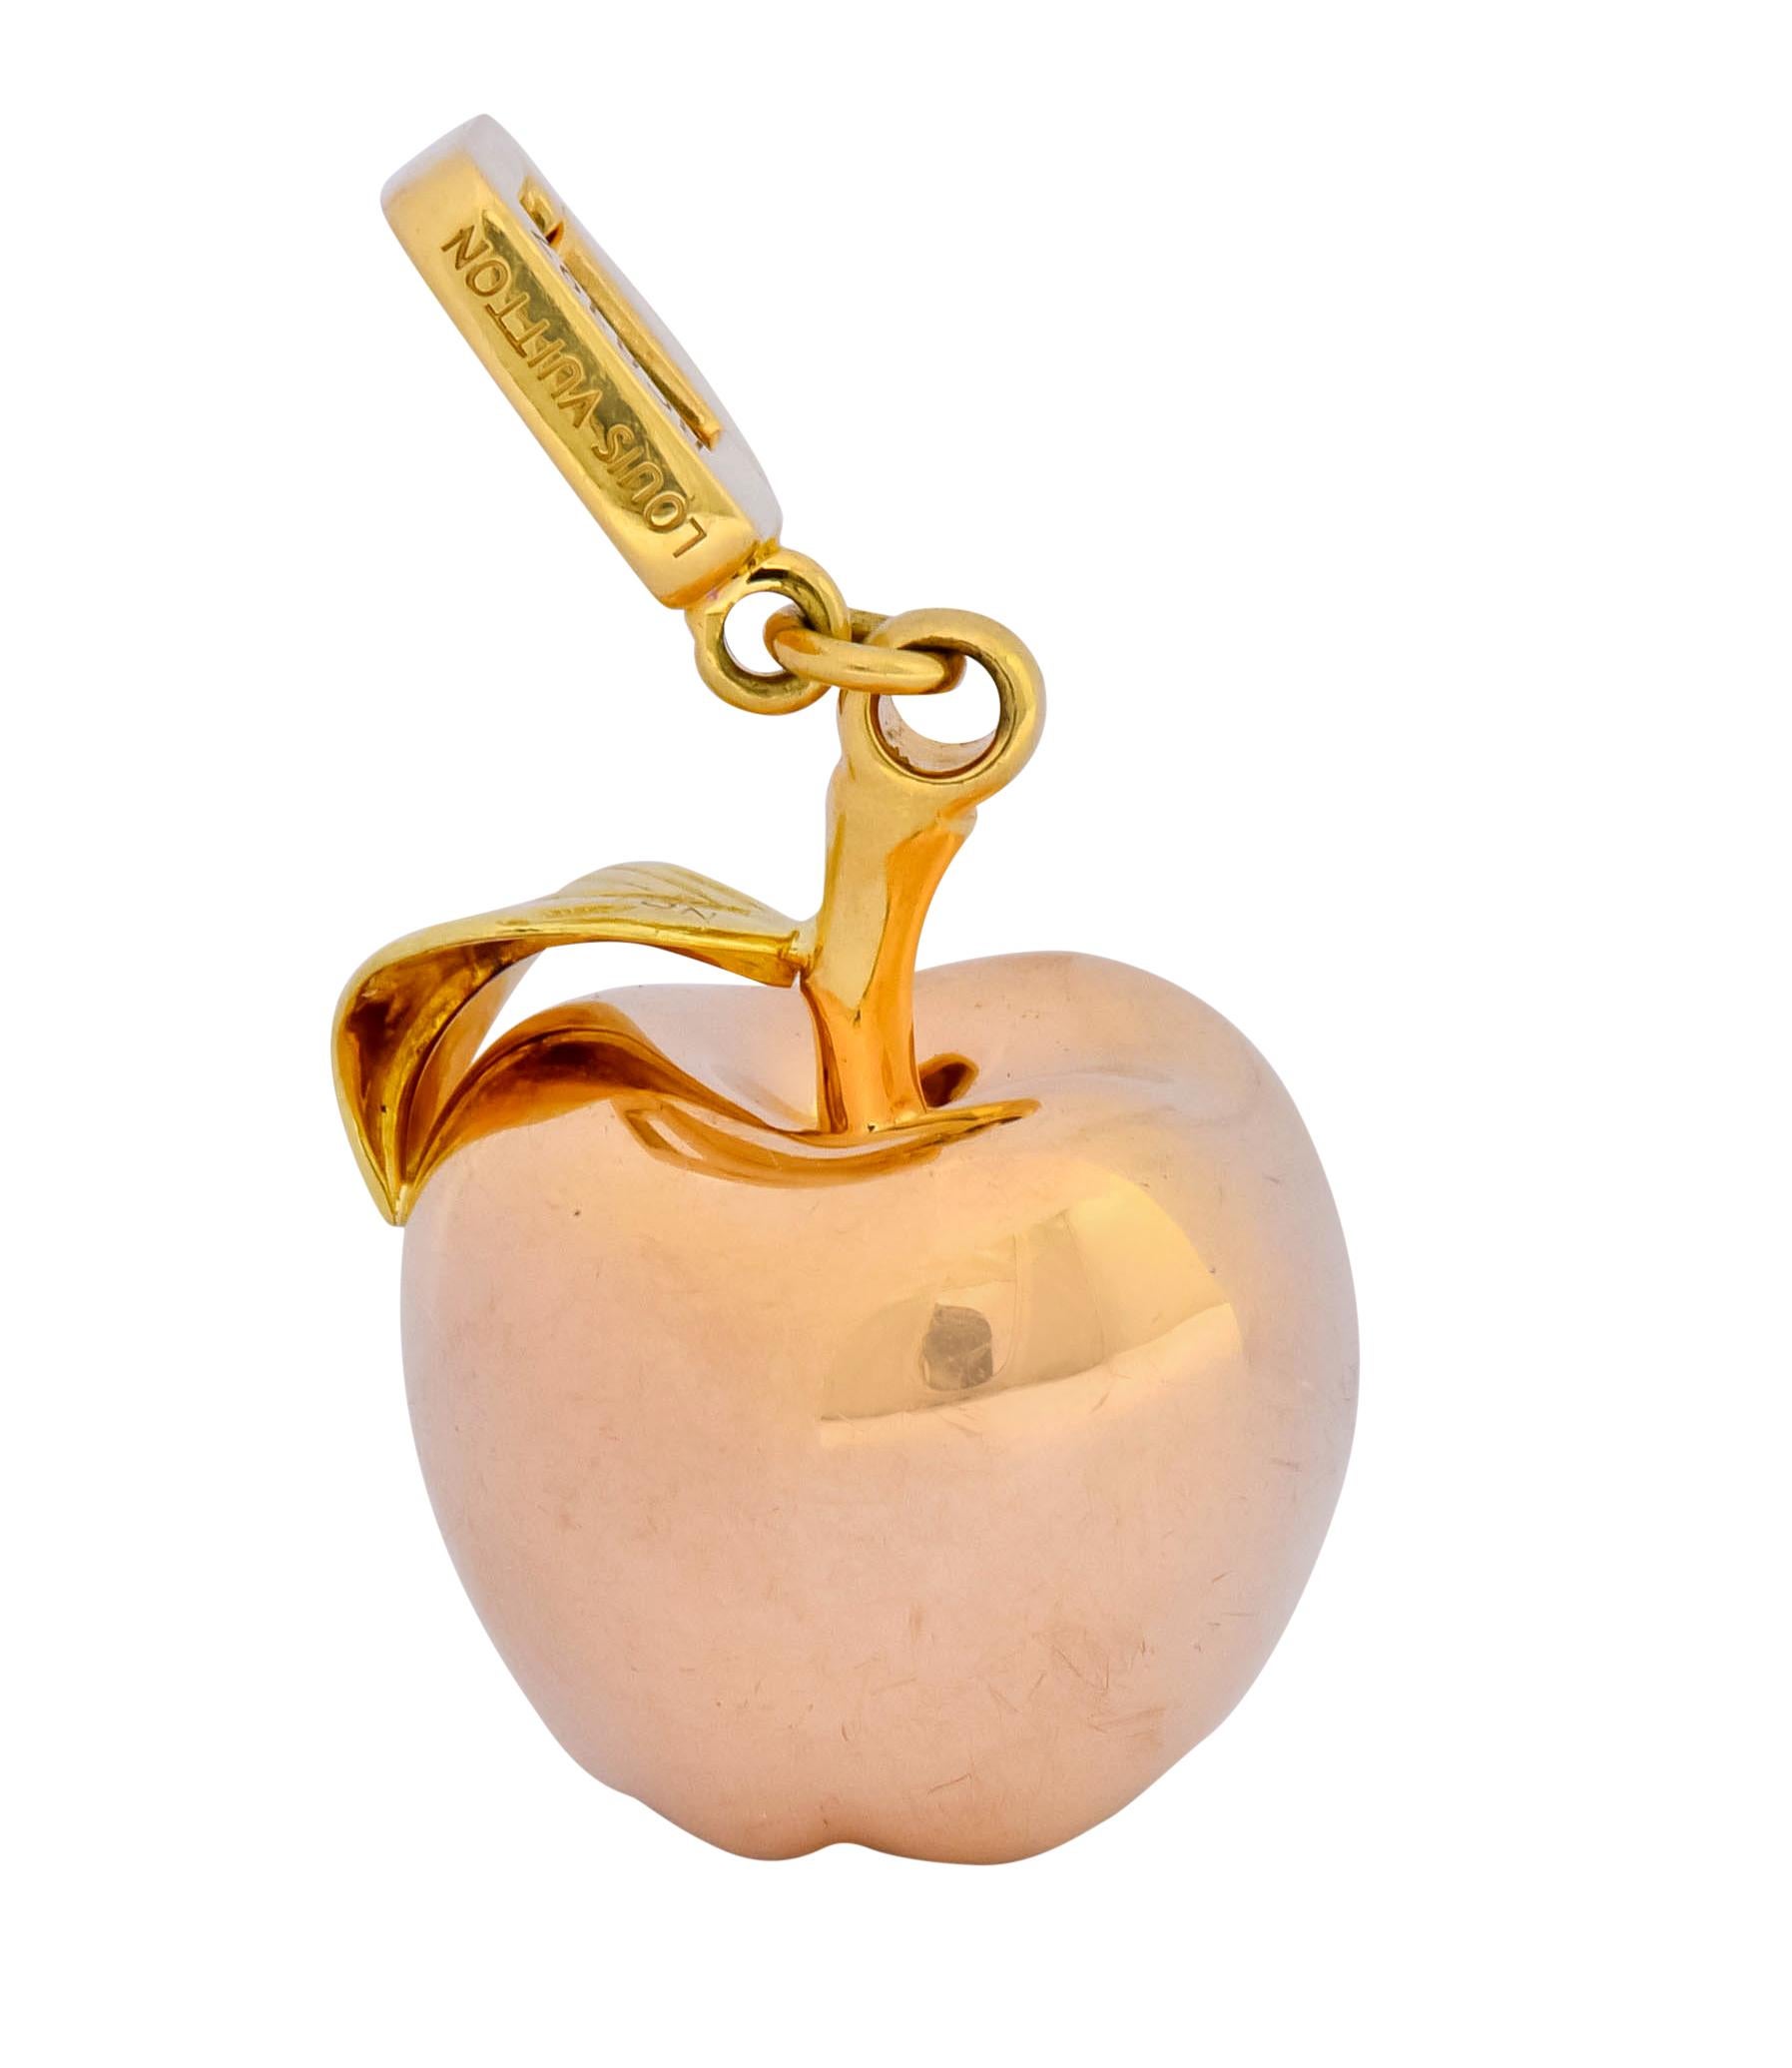 Sold at Auction: Louis Vuitton 18k Tri-Color Gold Apple Pendant